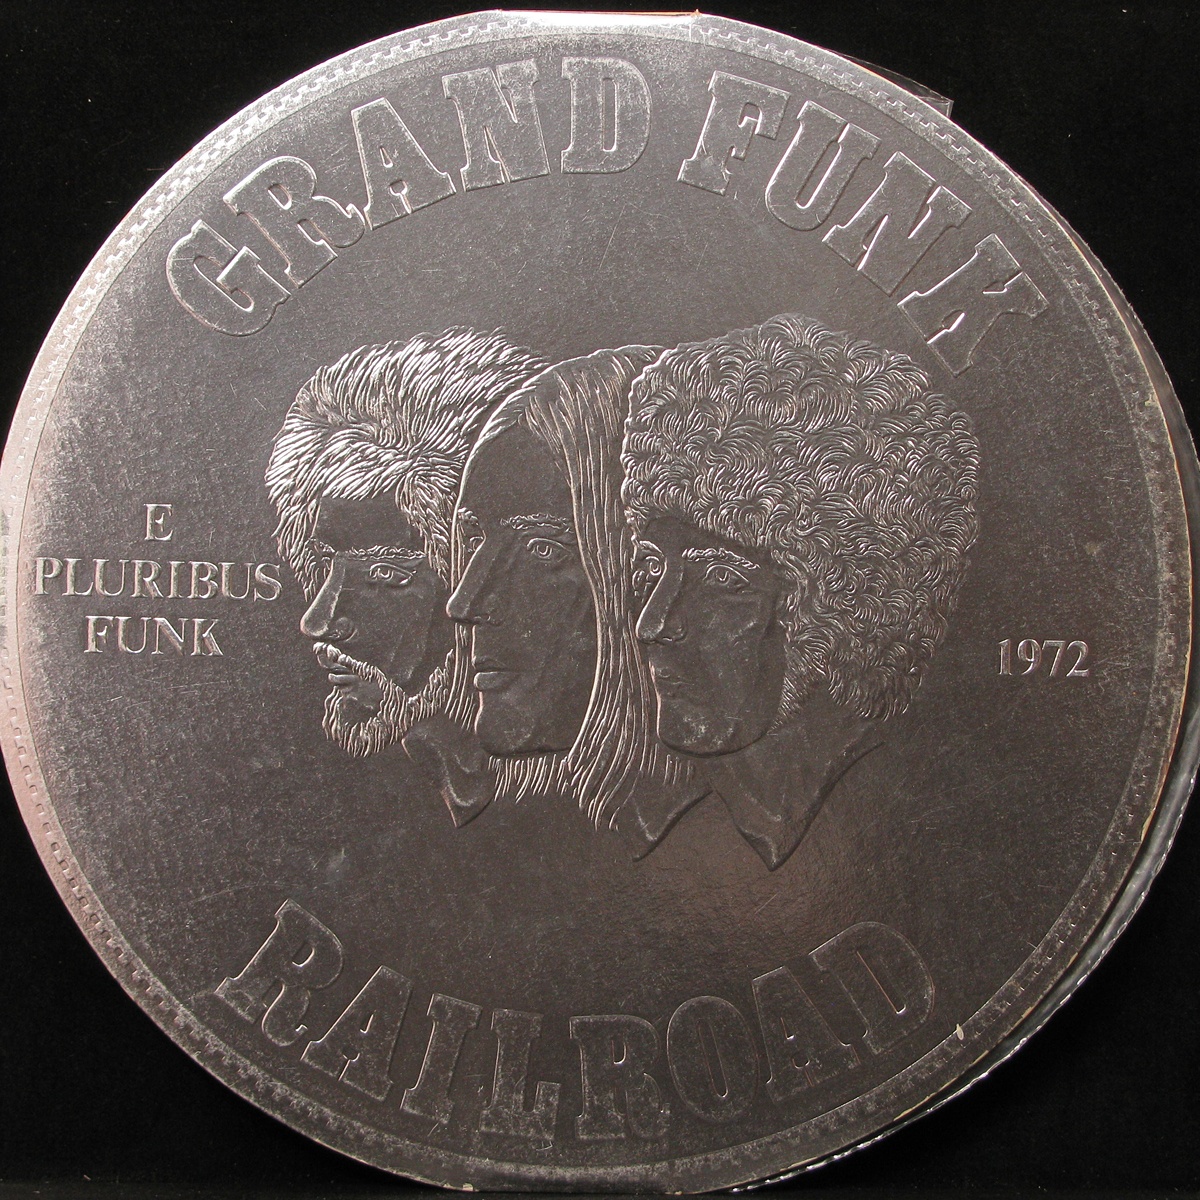 LP Grand Funk Railroad — E Pluribus Funk фото